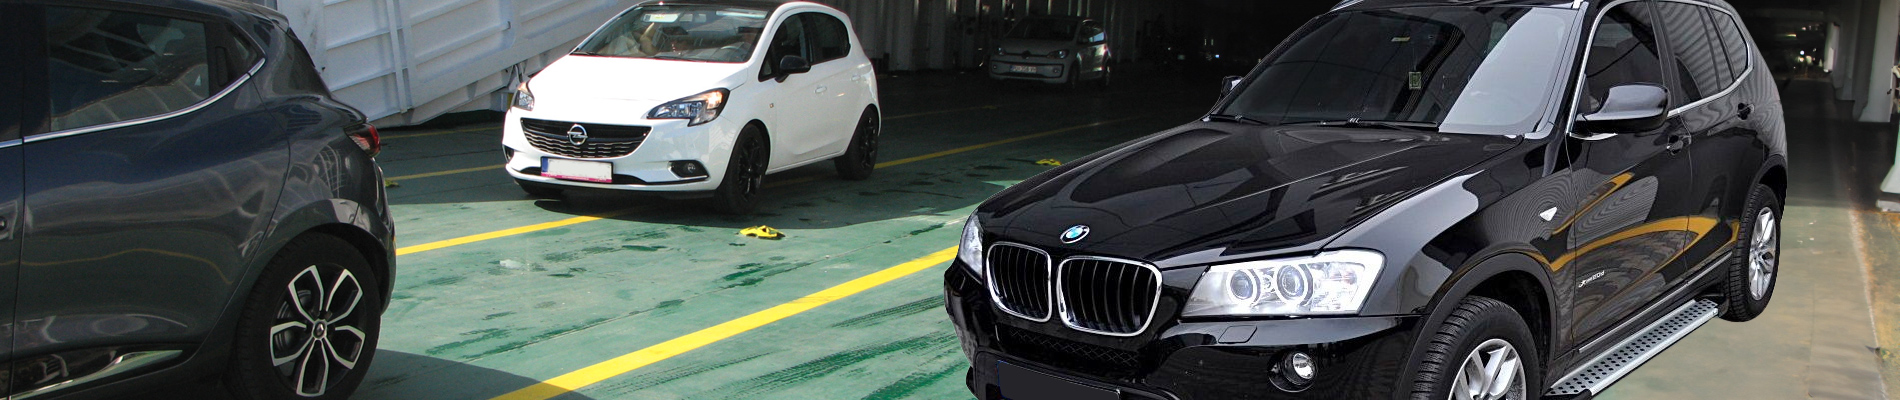 BMW X3 Accessories, Aftermarket Parts, Mods & Upgrades - AutoAccessoriesGarage.com